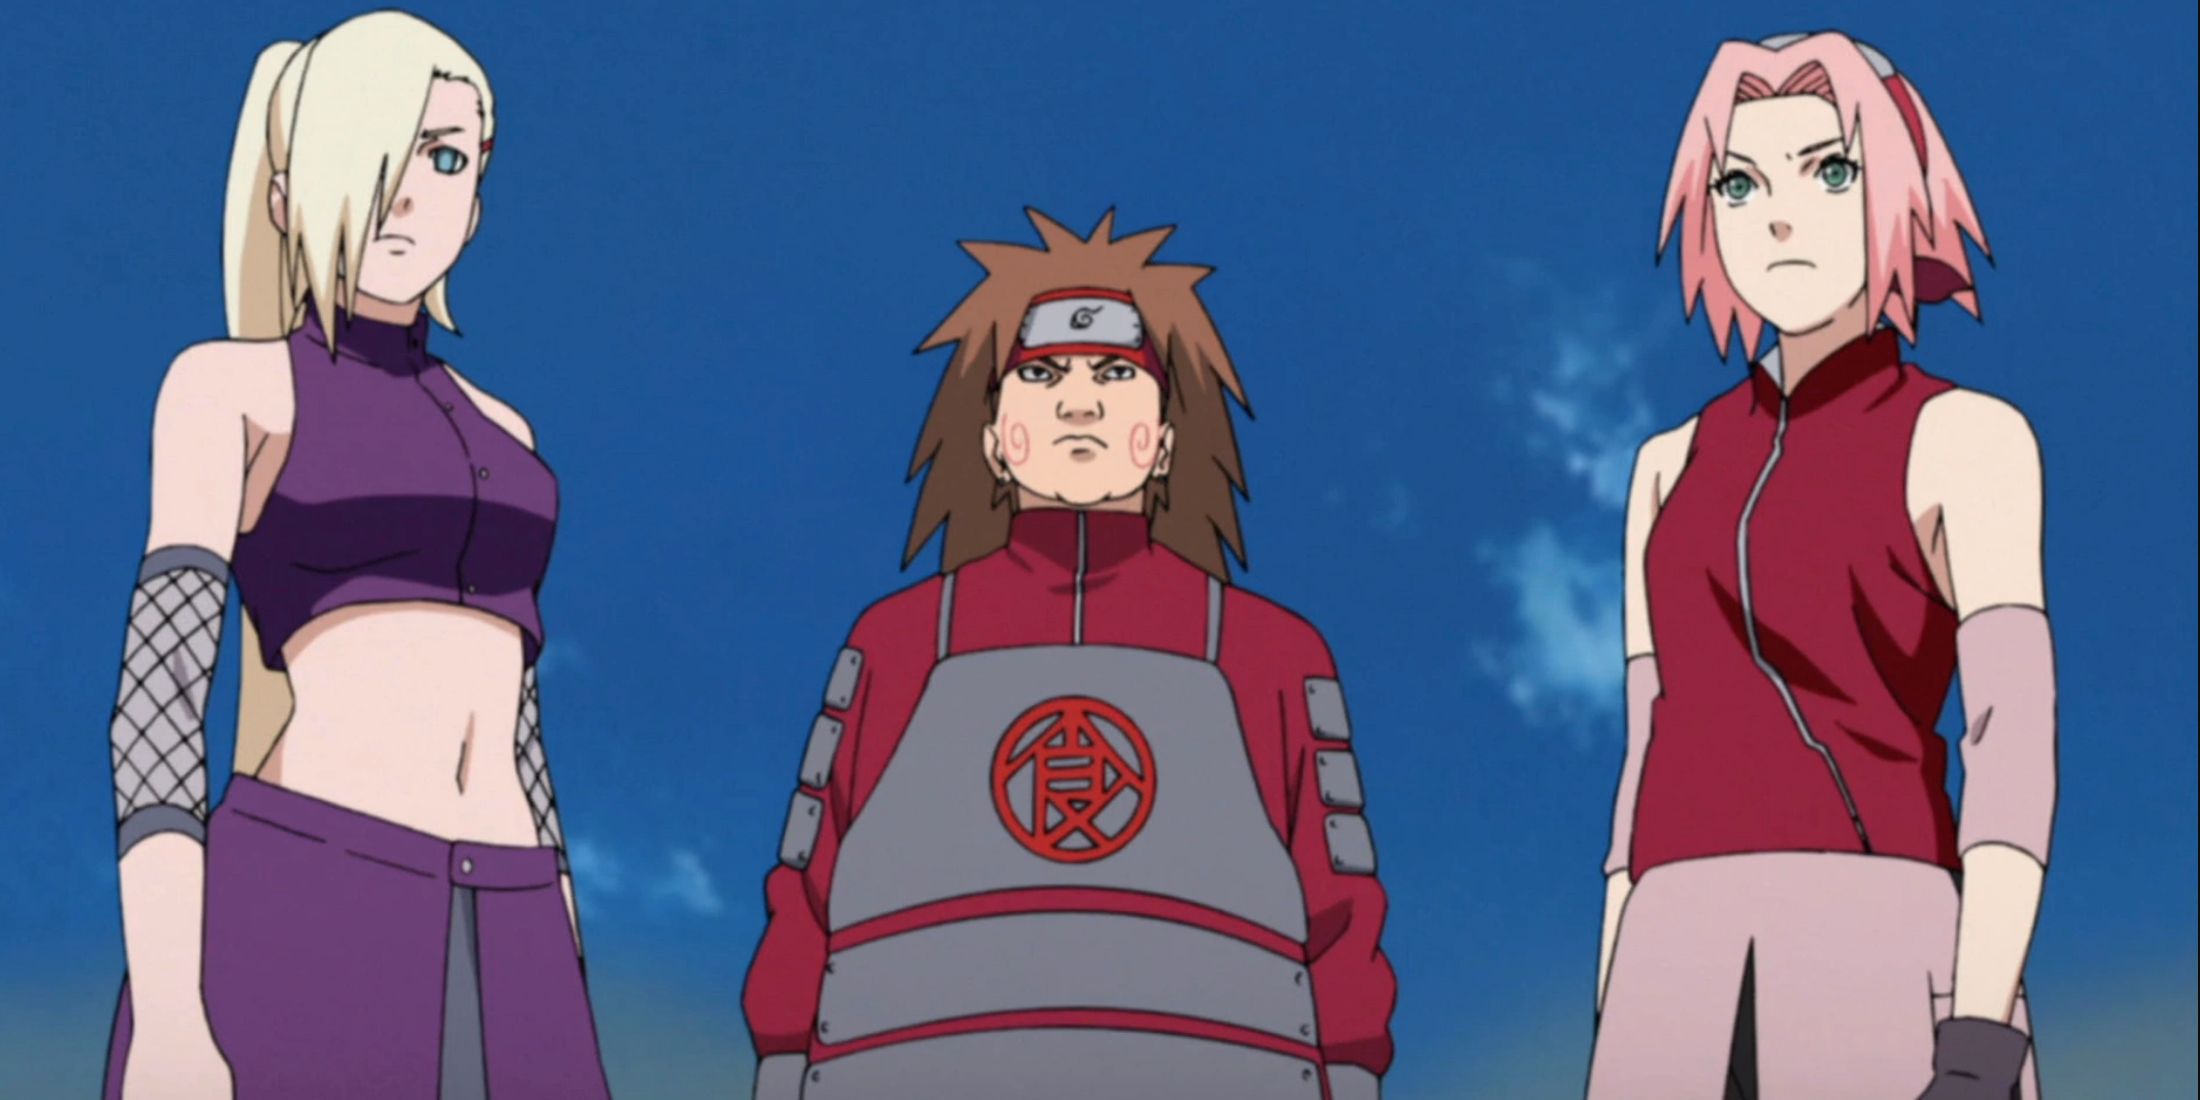 Ino, Choji, and Sakura stand together in Naruto Shippuden